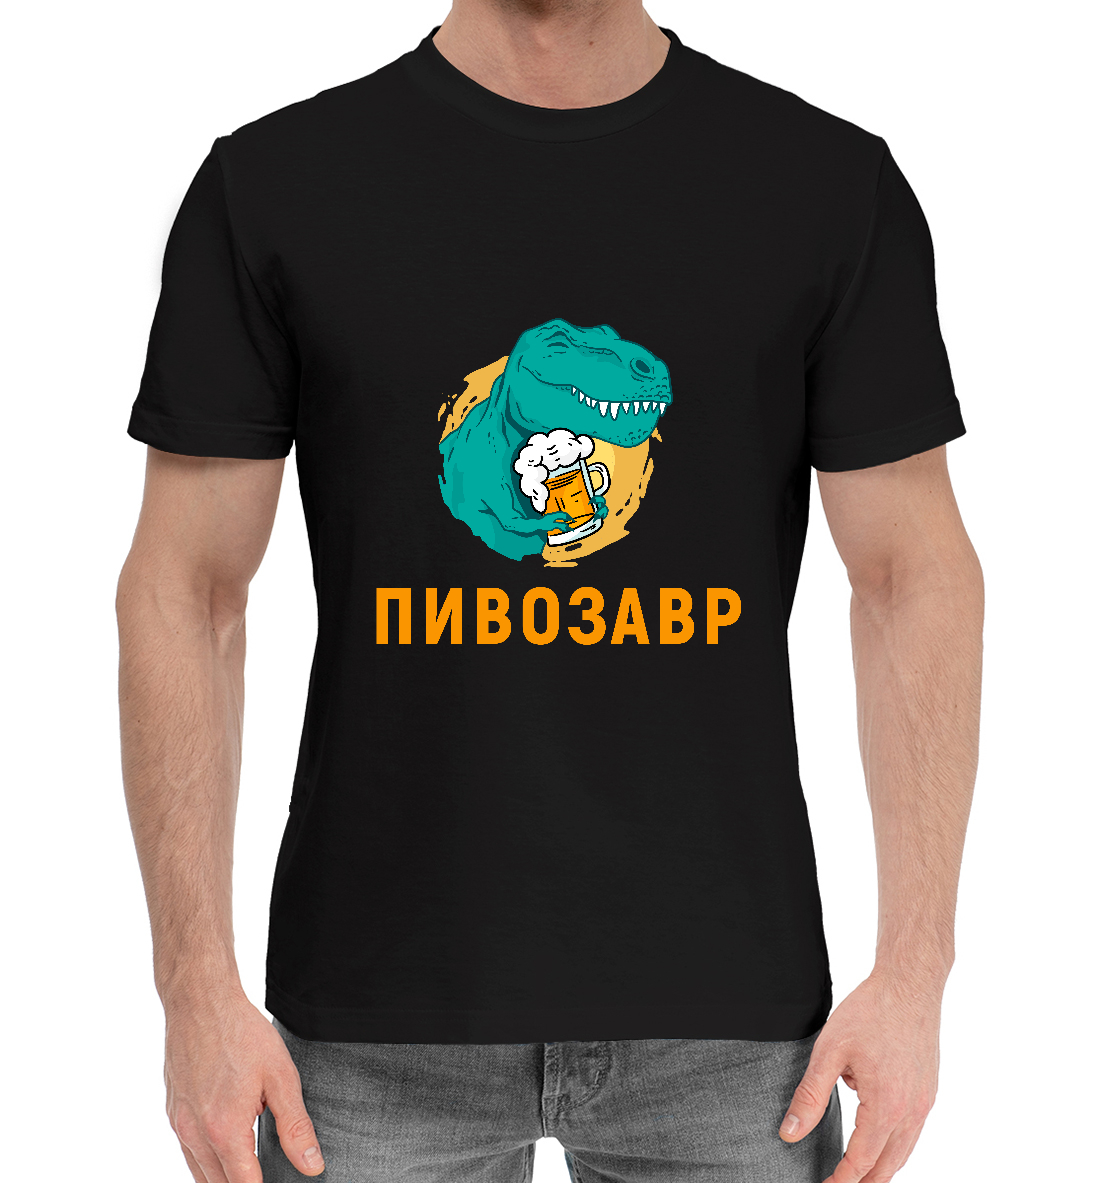 Мужская Хлопковая футболка с принтом Пивозавр Black, артикул PIV-462116-hfu-2mp